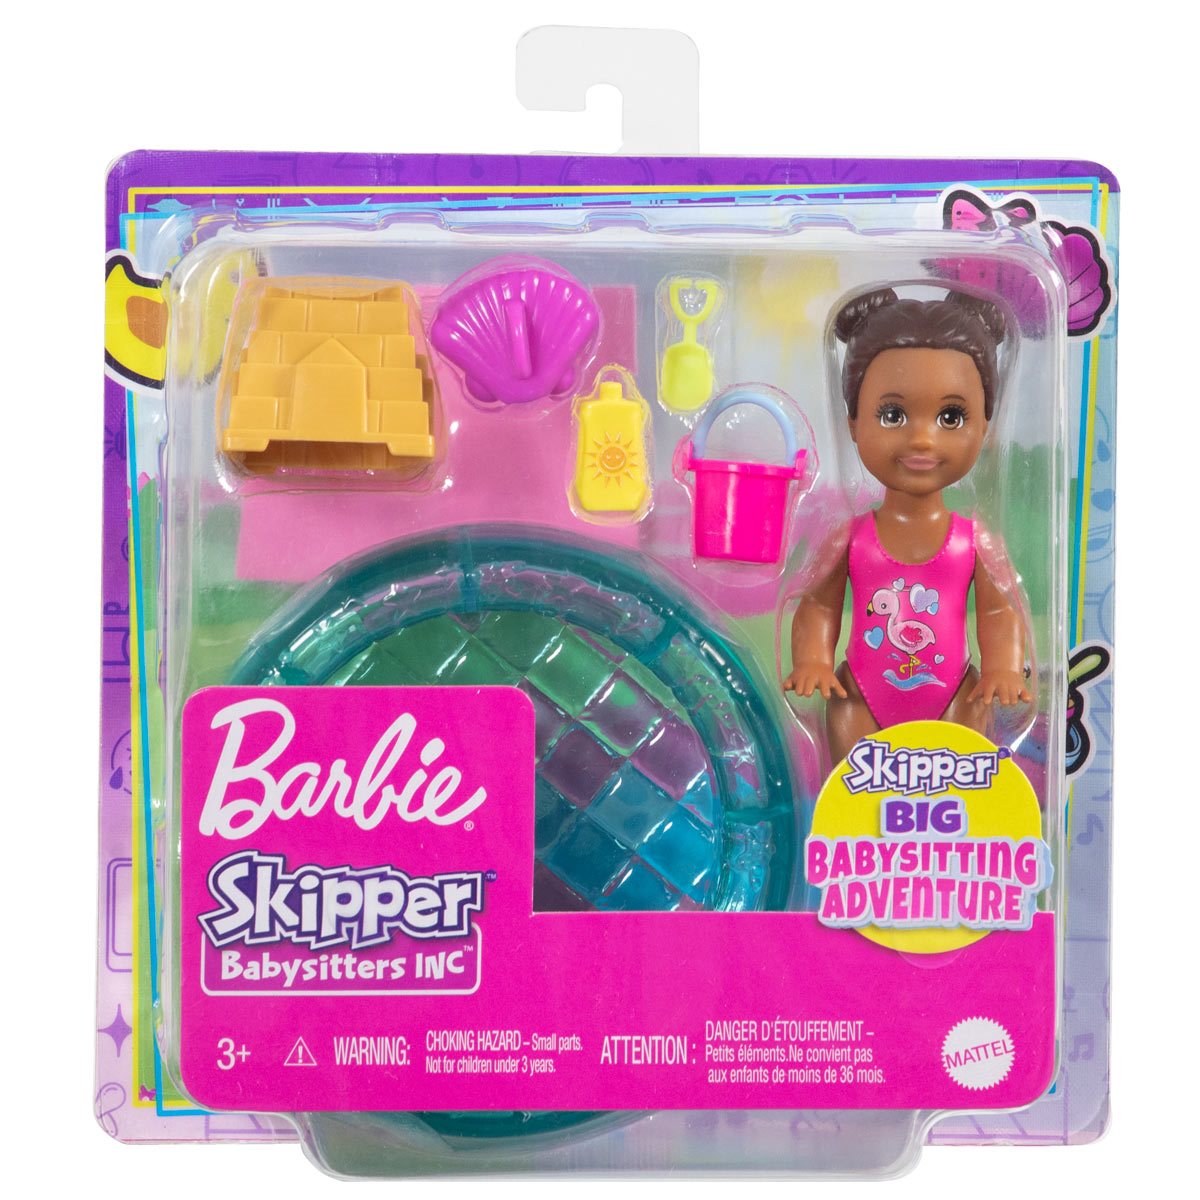 Barbie Skipper Babysitters Inc. Fun in the